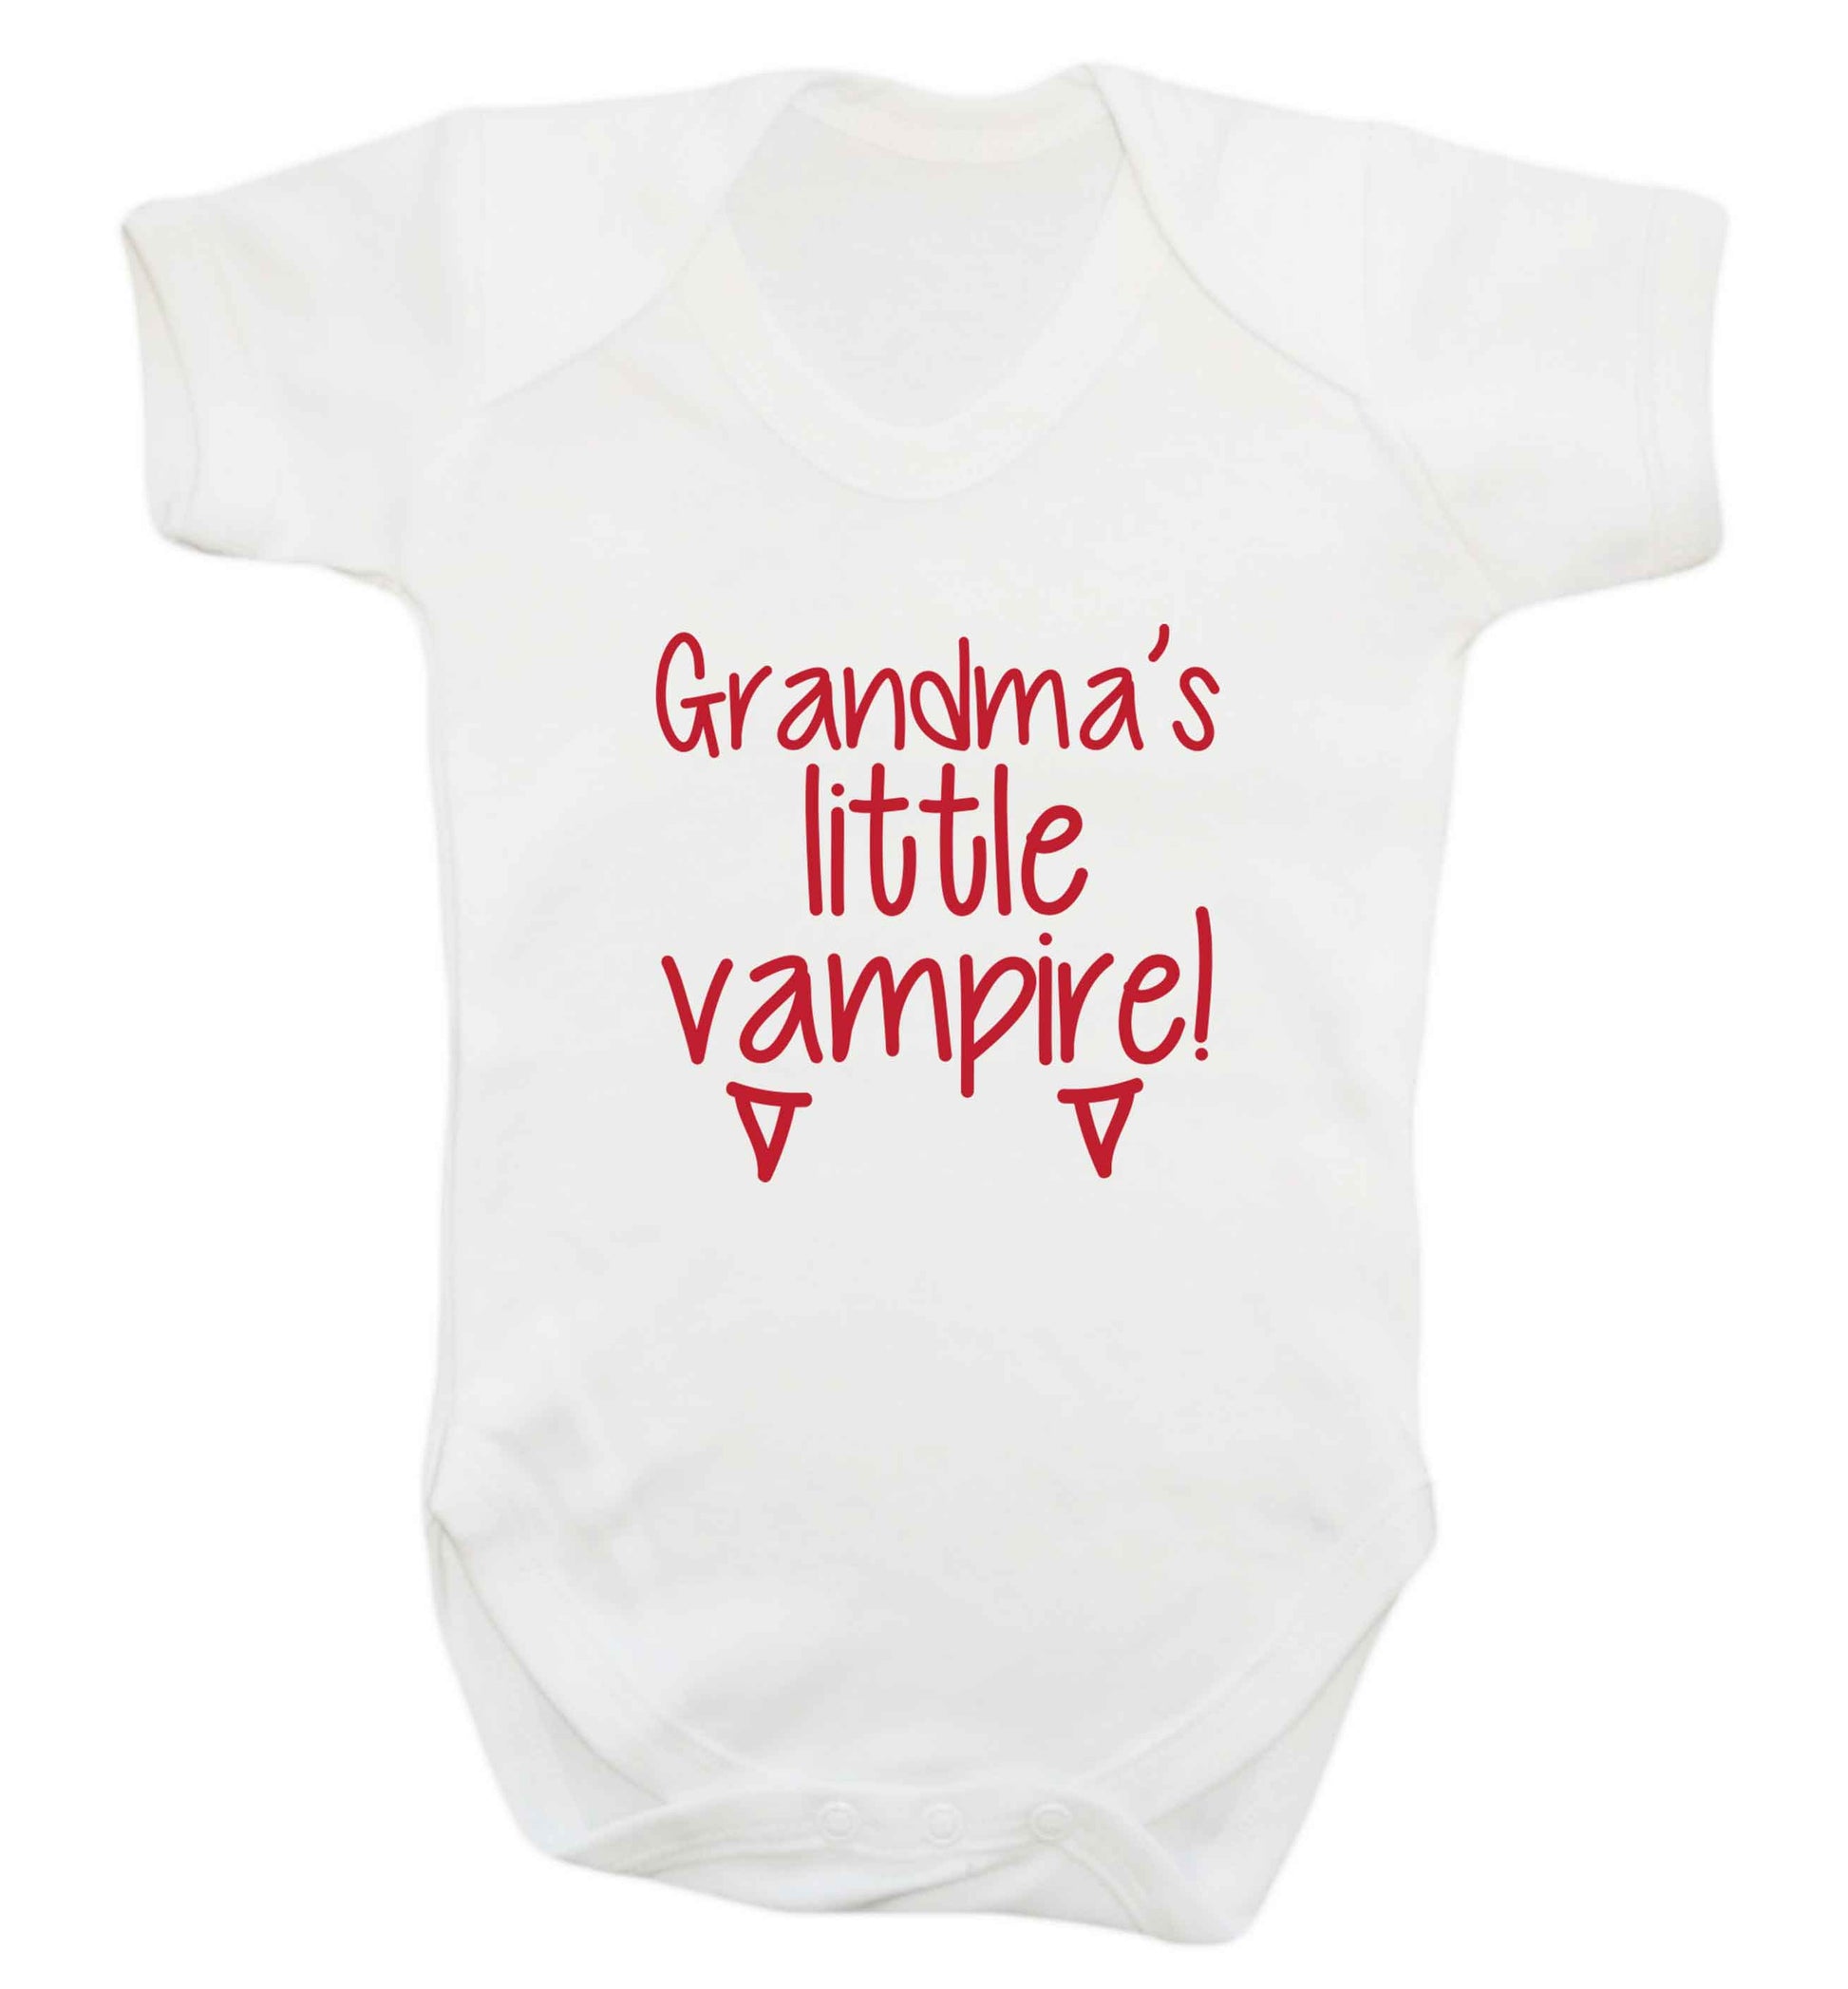 Grandma's little vampire baby vest white 18-24 months